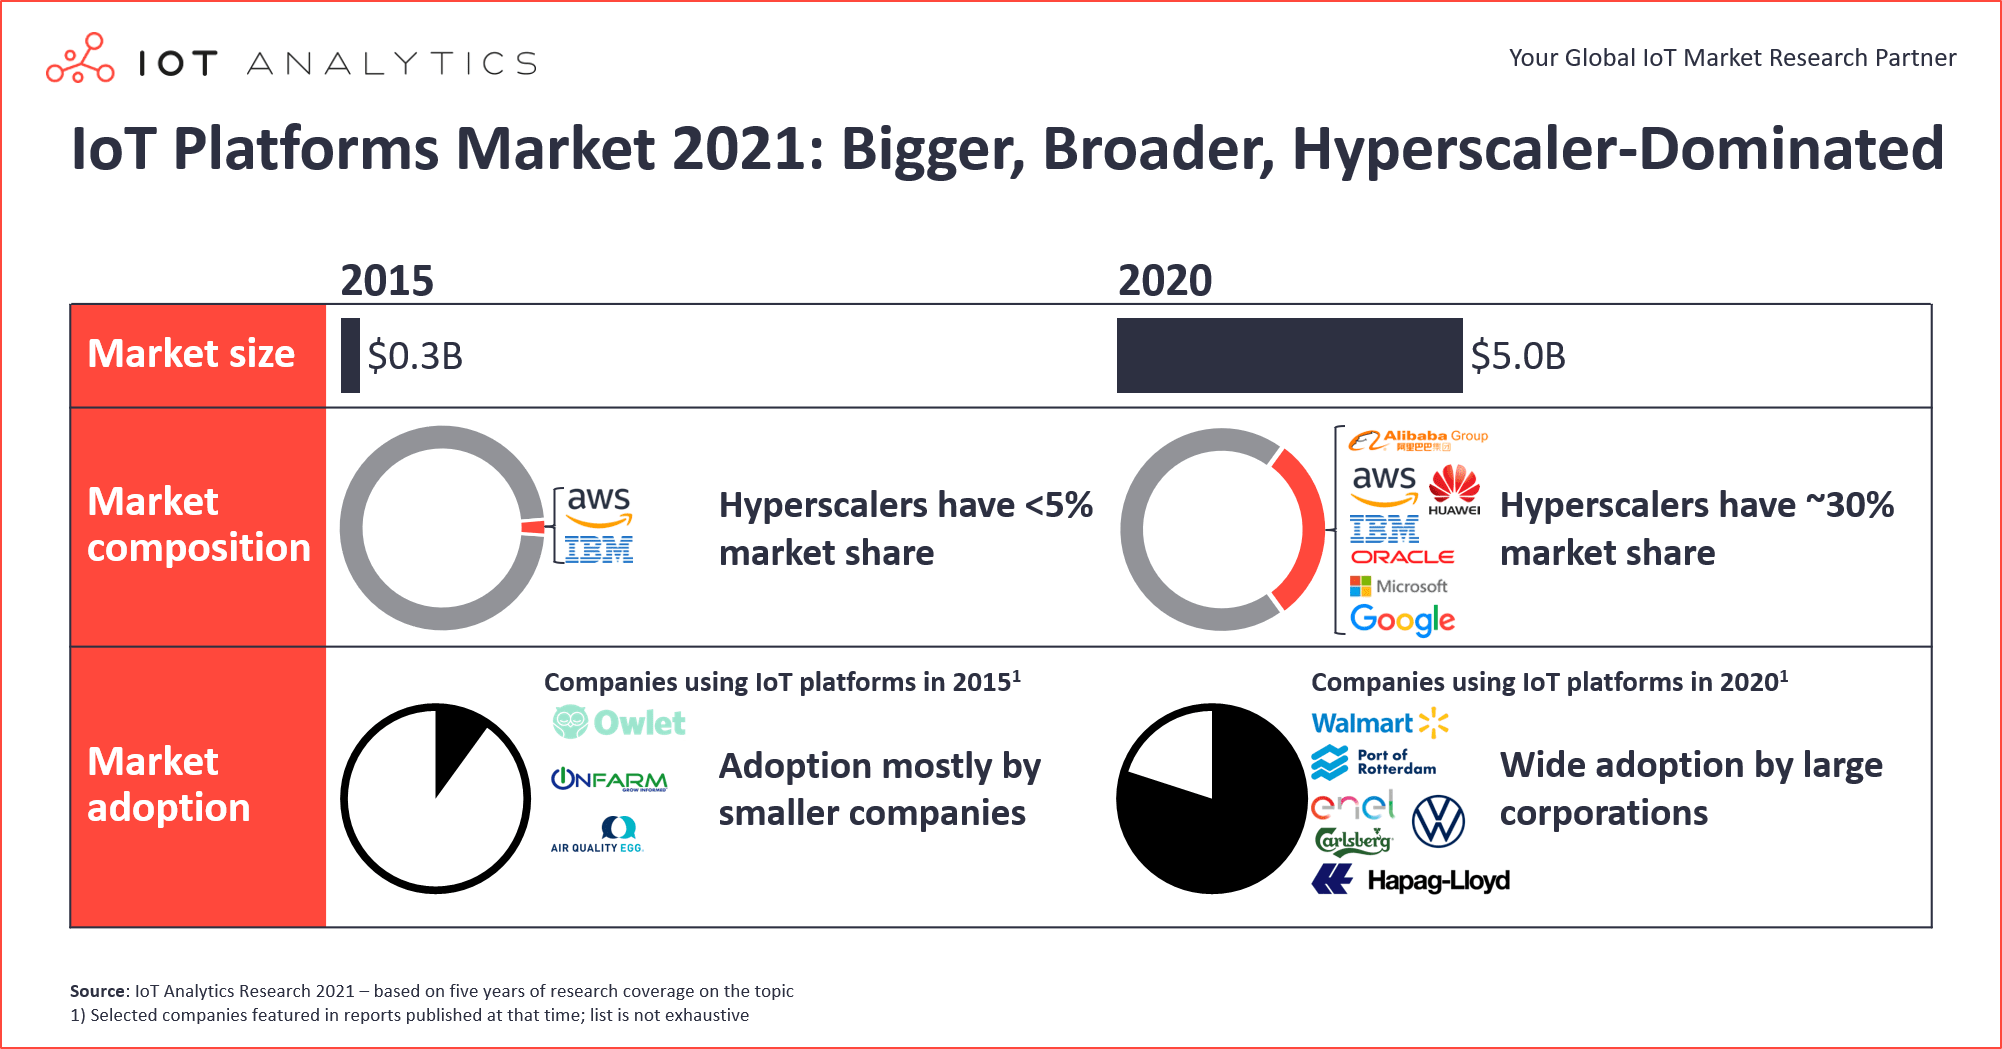 IoT Platforms Market 2021 - Bigger Broader Hyperscaler-Dominated